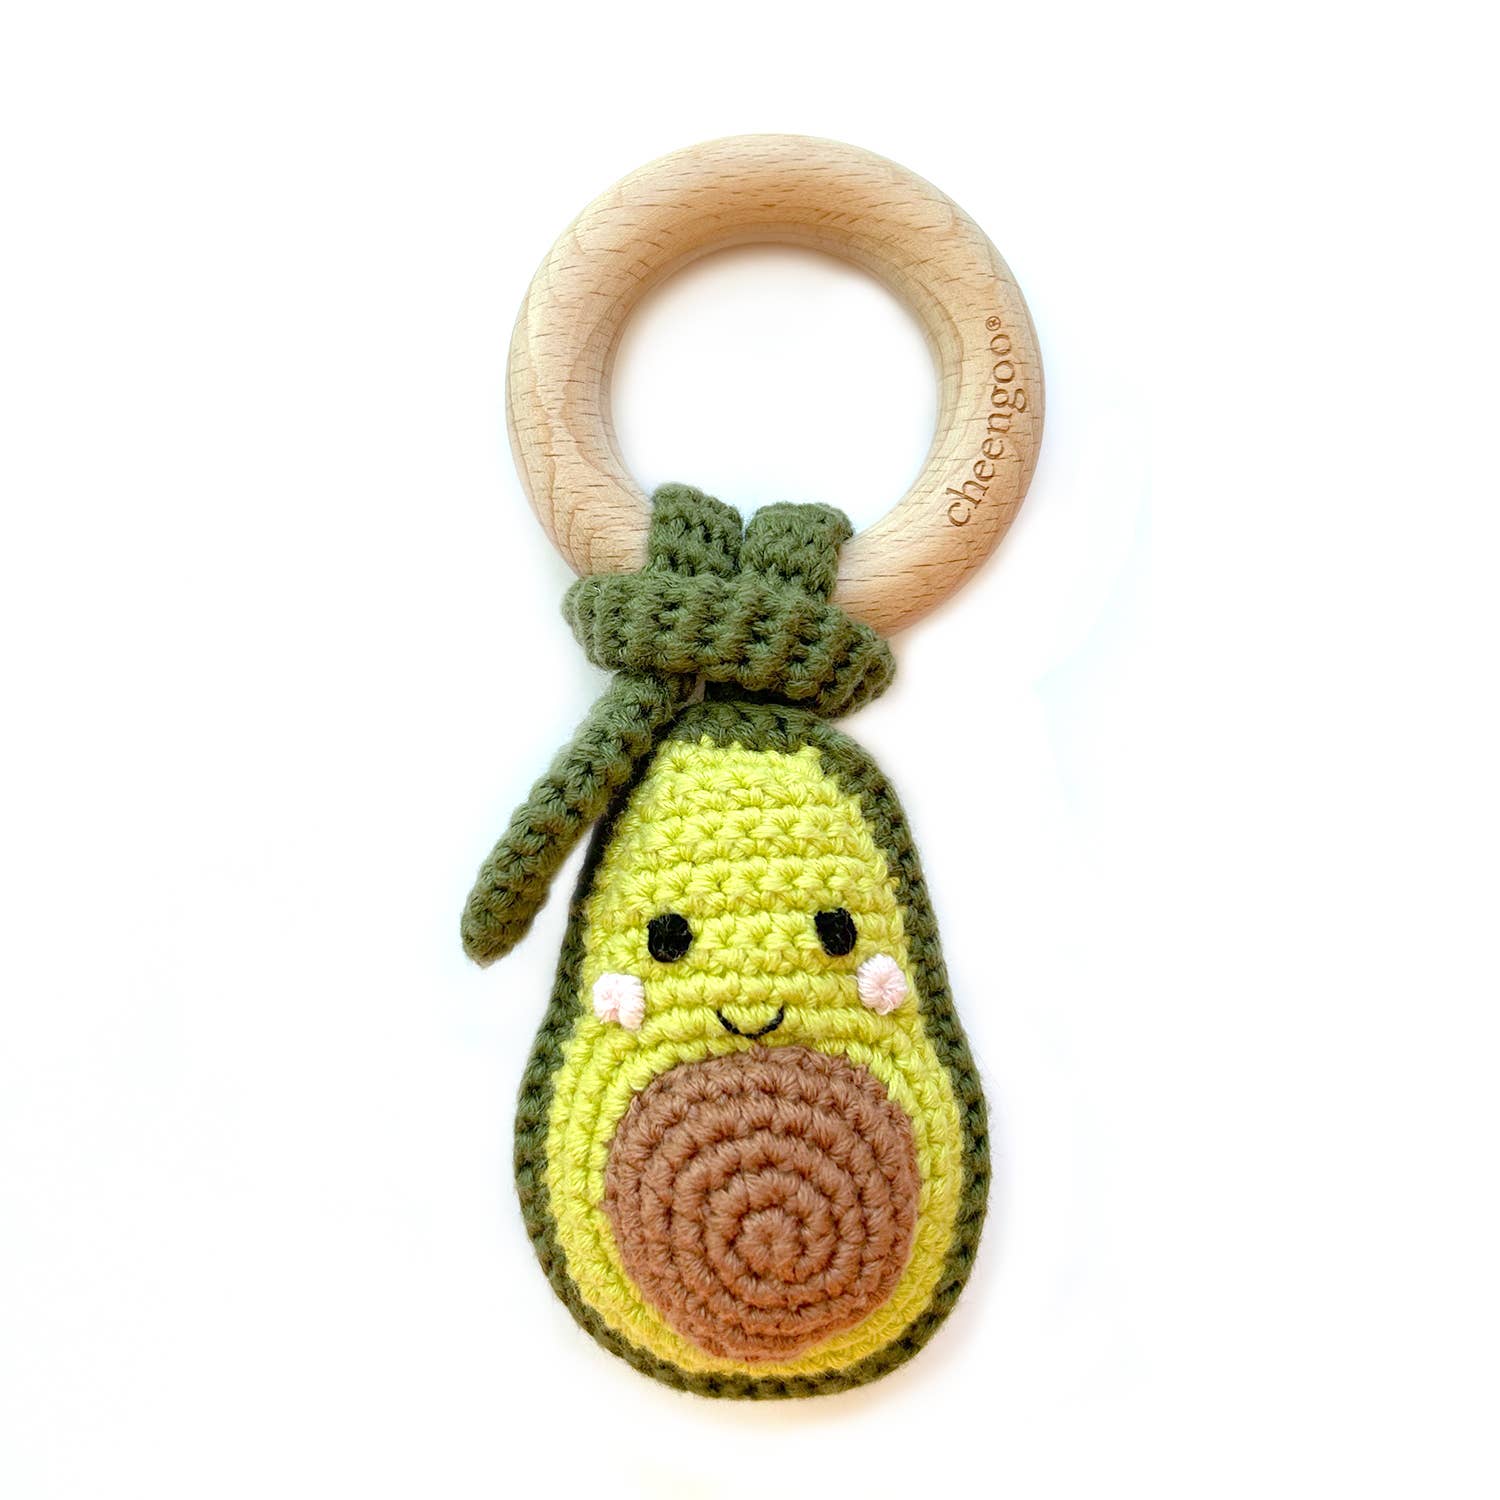 Crocheted Avocado Teething Rattle